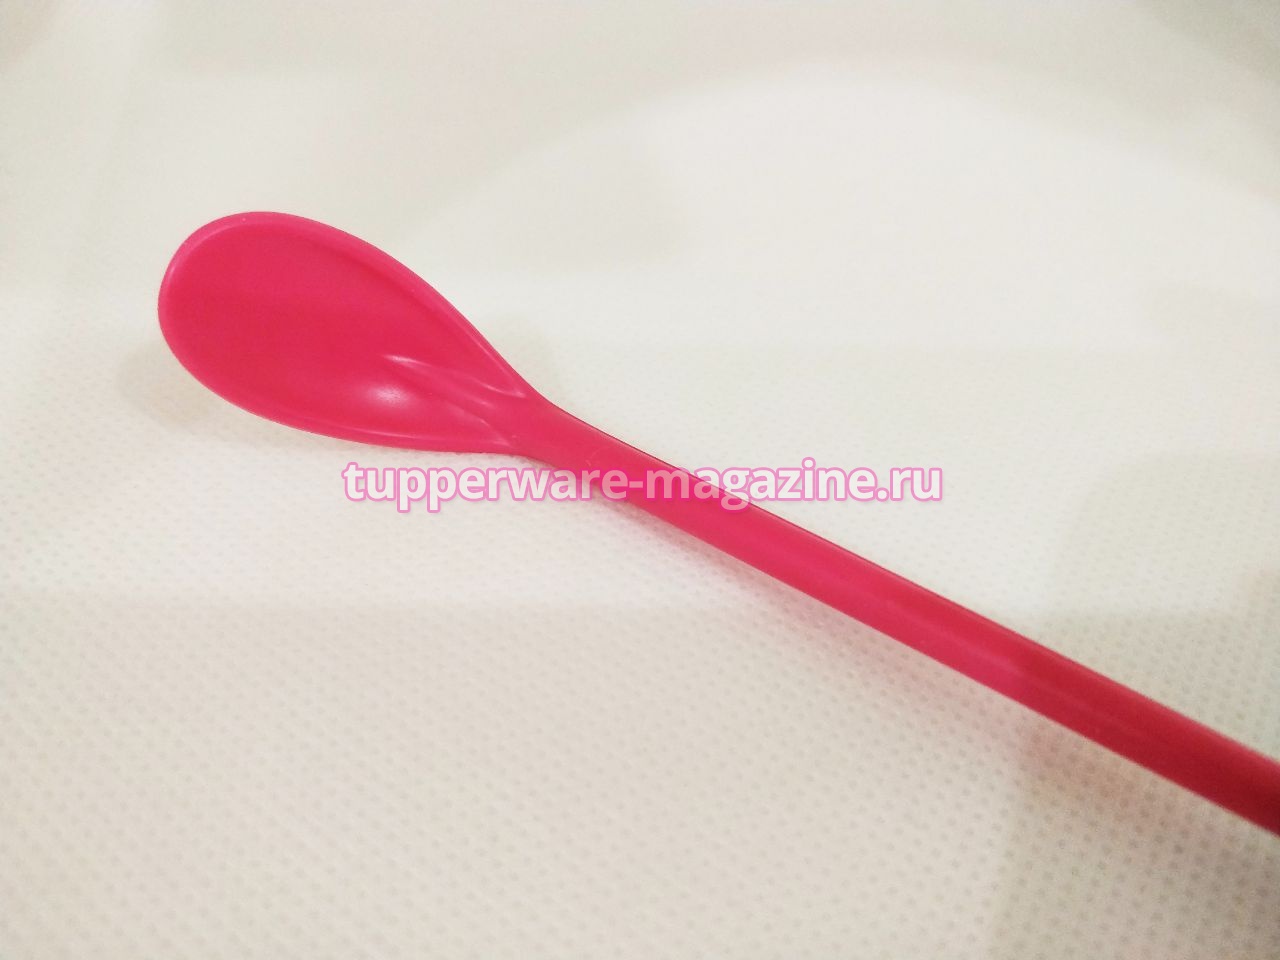 Ложечка "Аистенок" Tupperware в розовом цвете